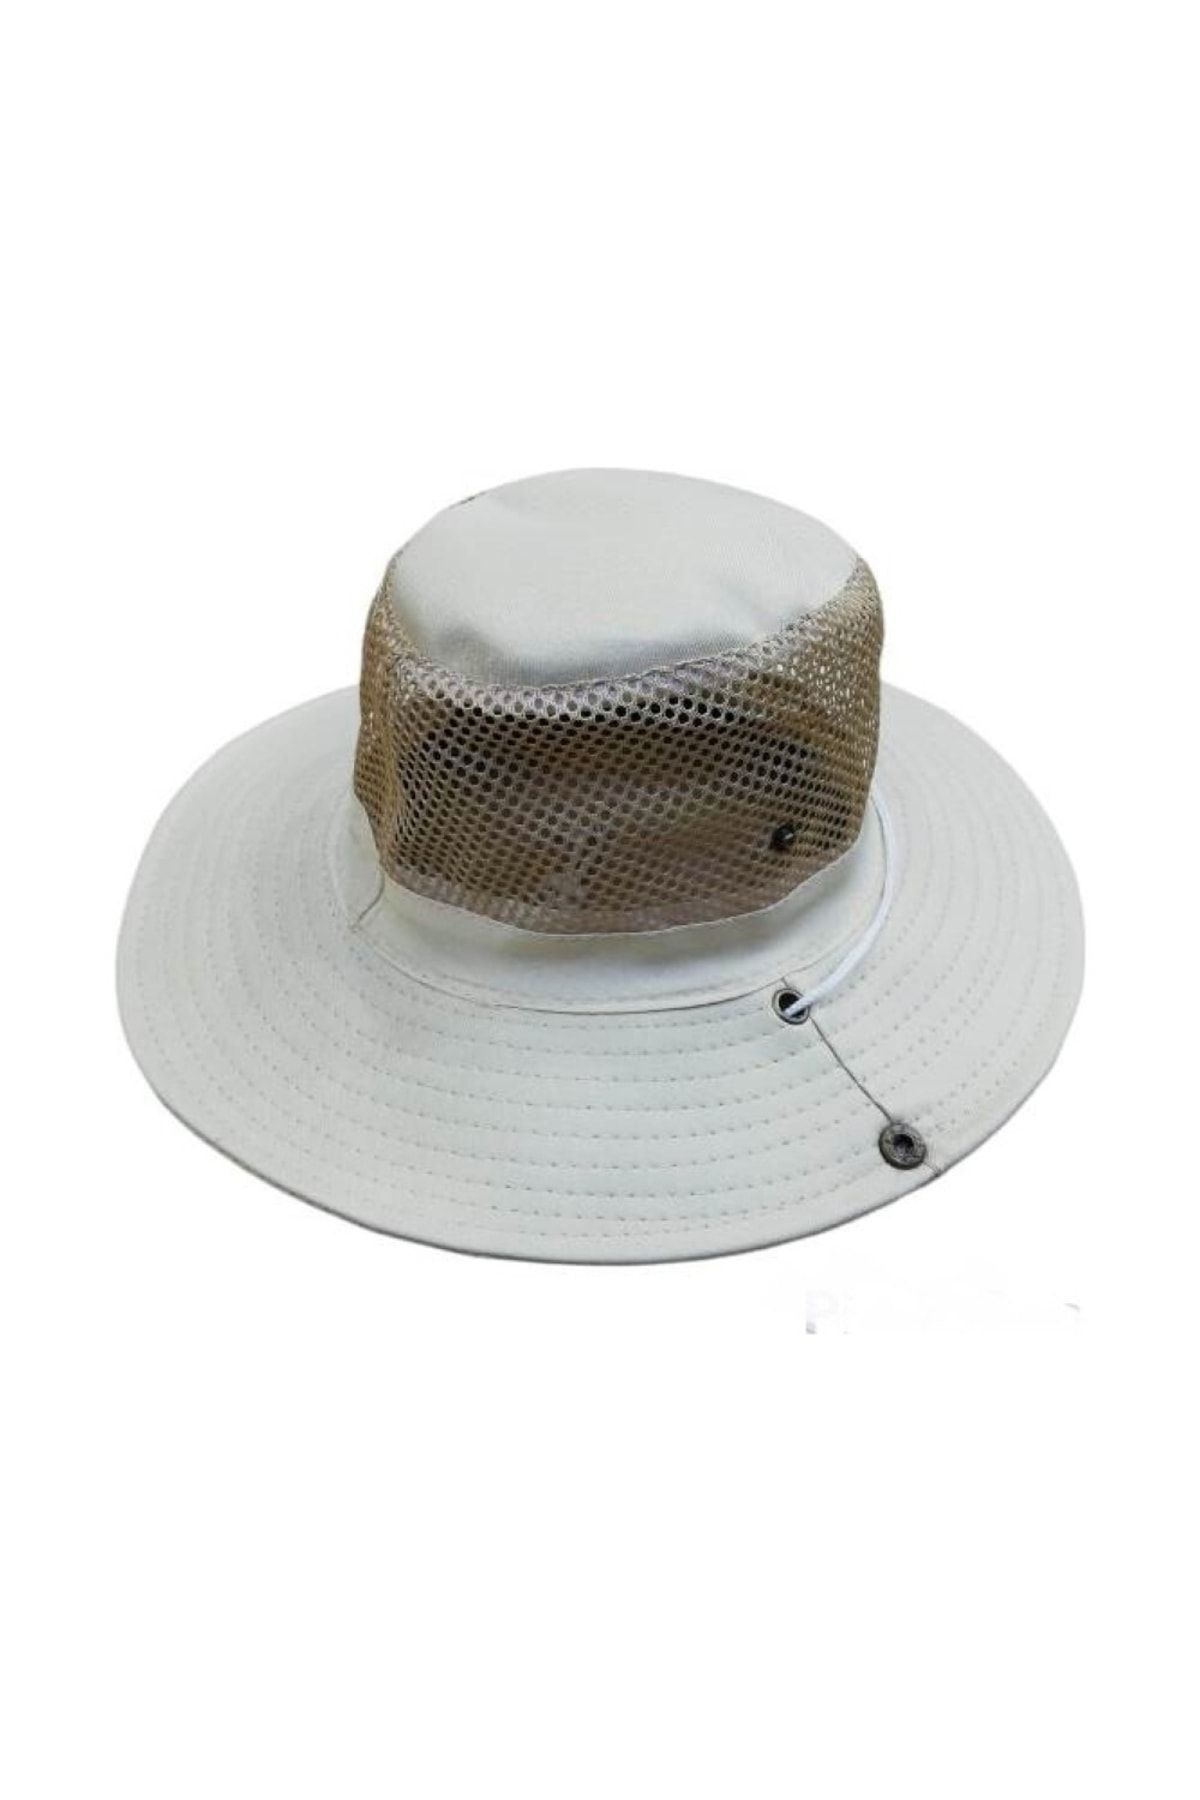 Neler Geldi Neler Unisex Yazlık Katlanabilir Fileli Safari Fötr Şapkası Foter Şapka Yazlık Fötür Şapka